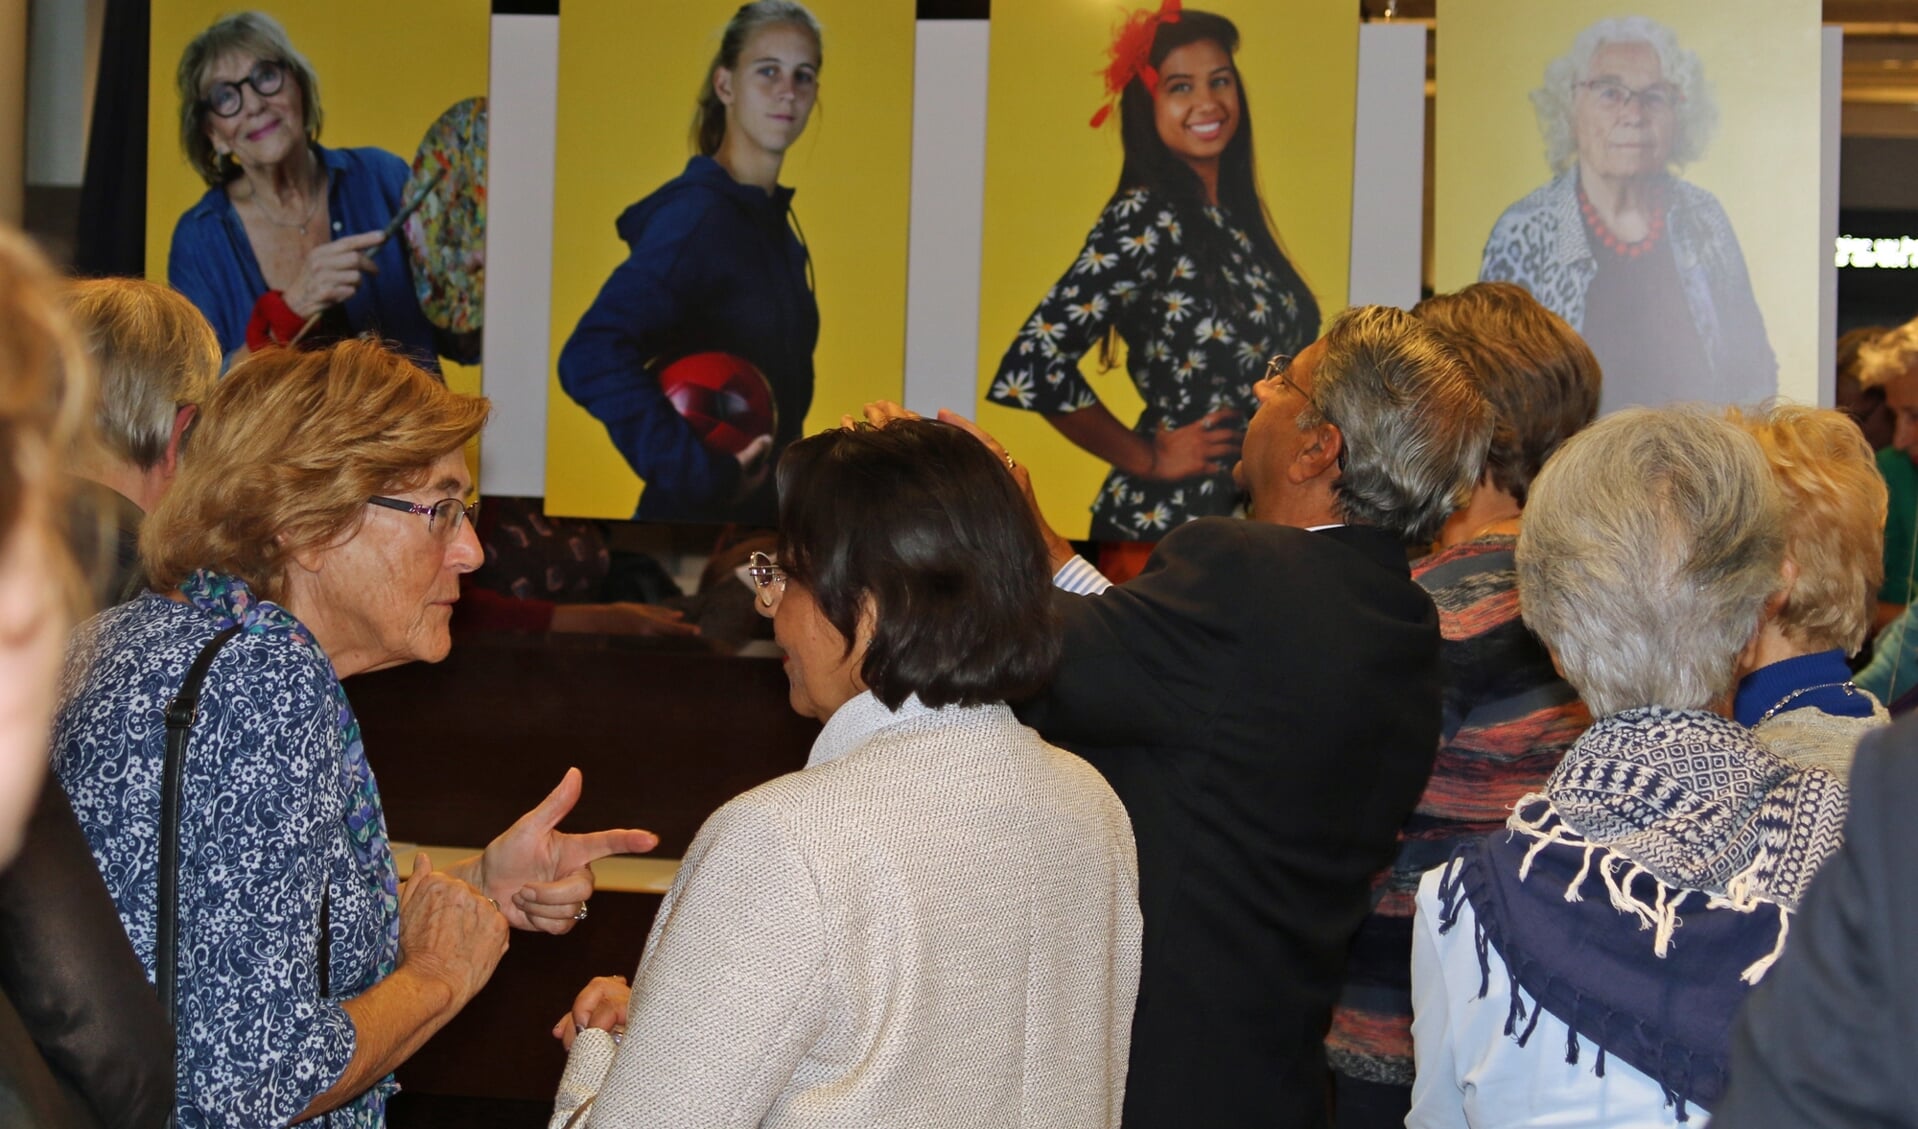 Bezoekers van de opening bekijken en bespreken de foto's van de heldinnen.